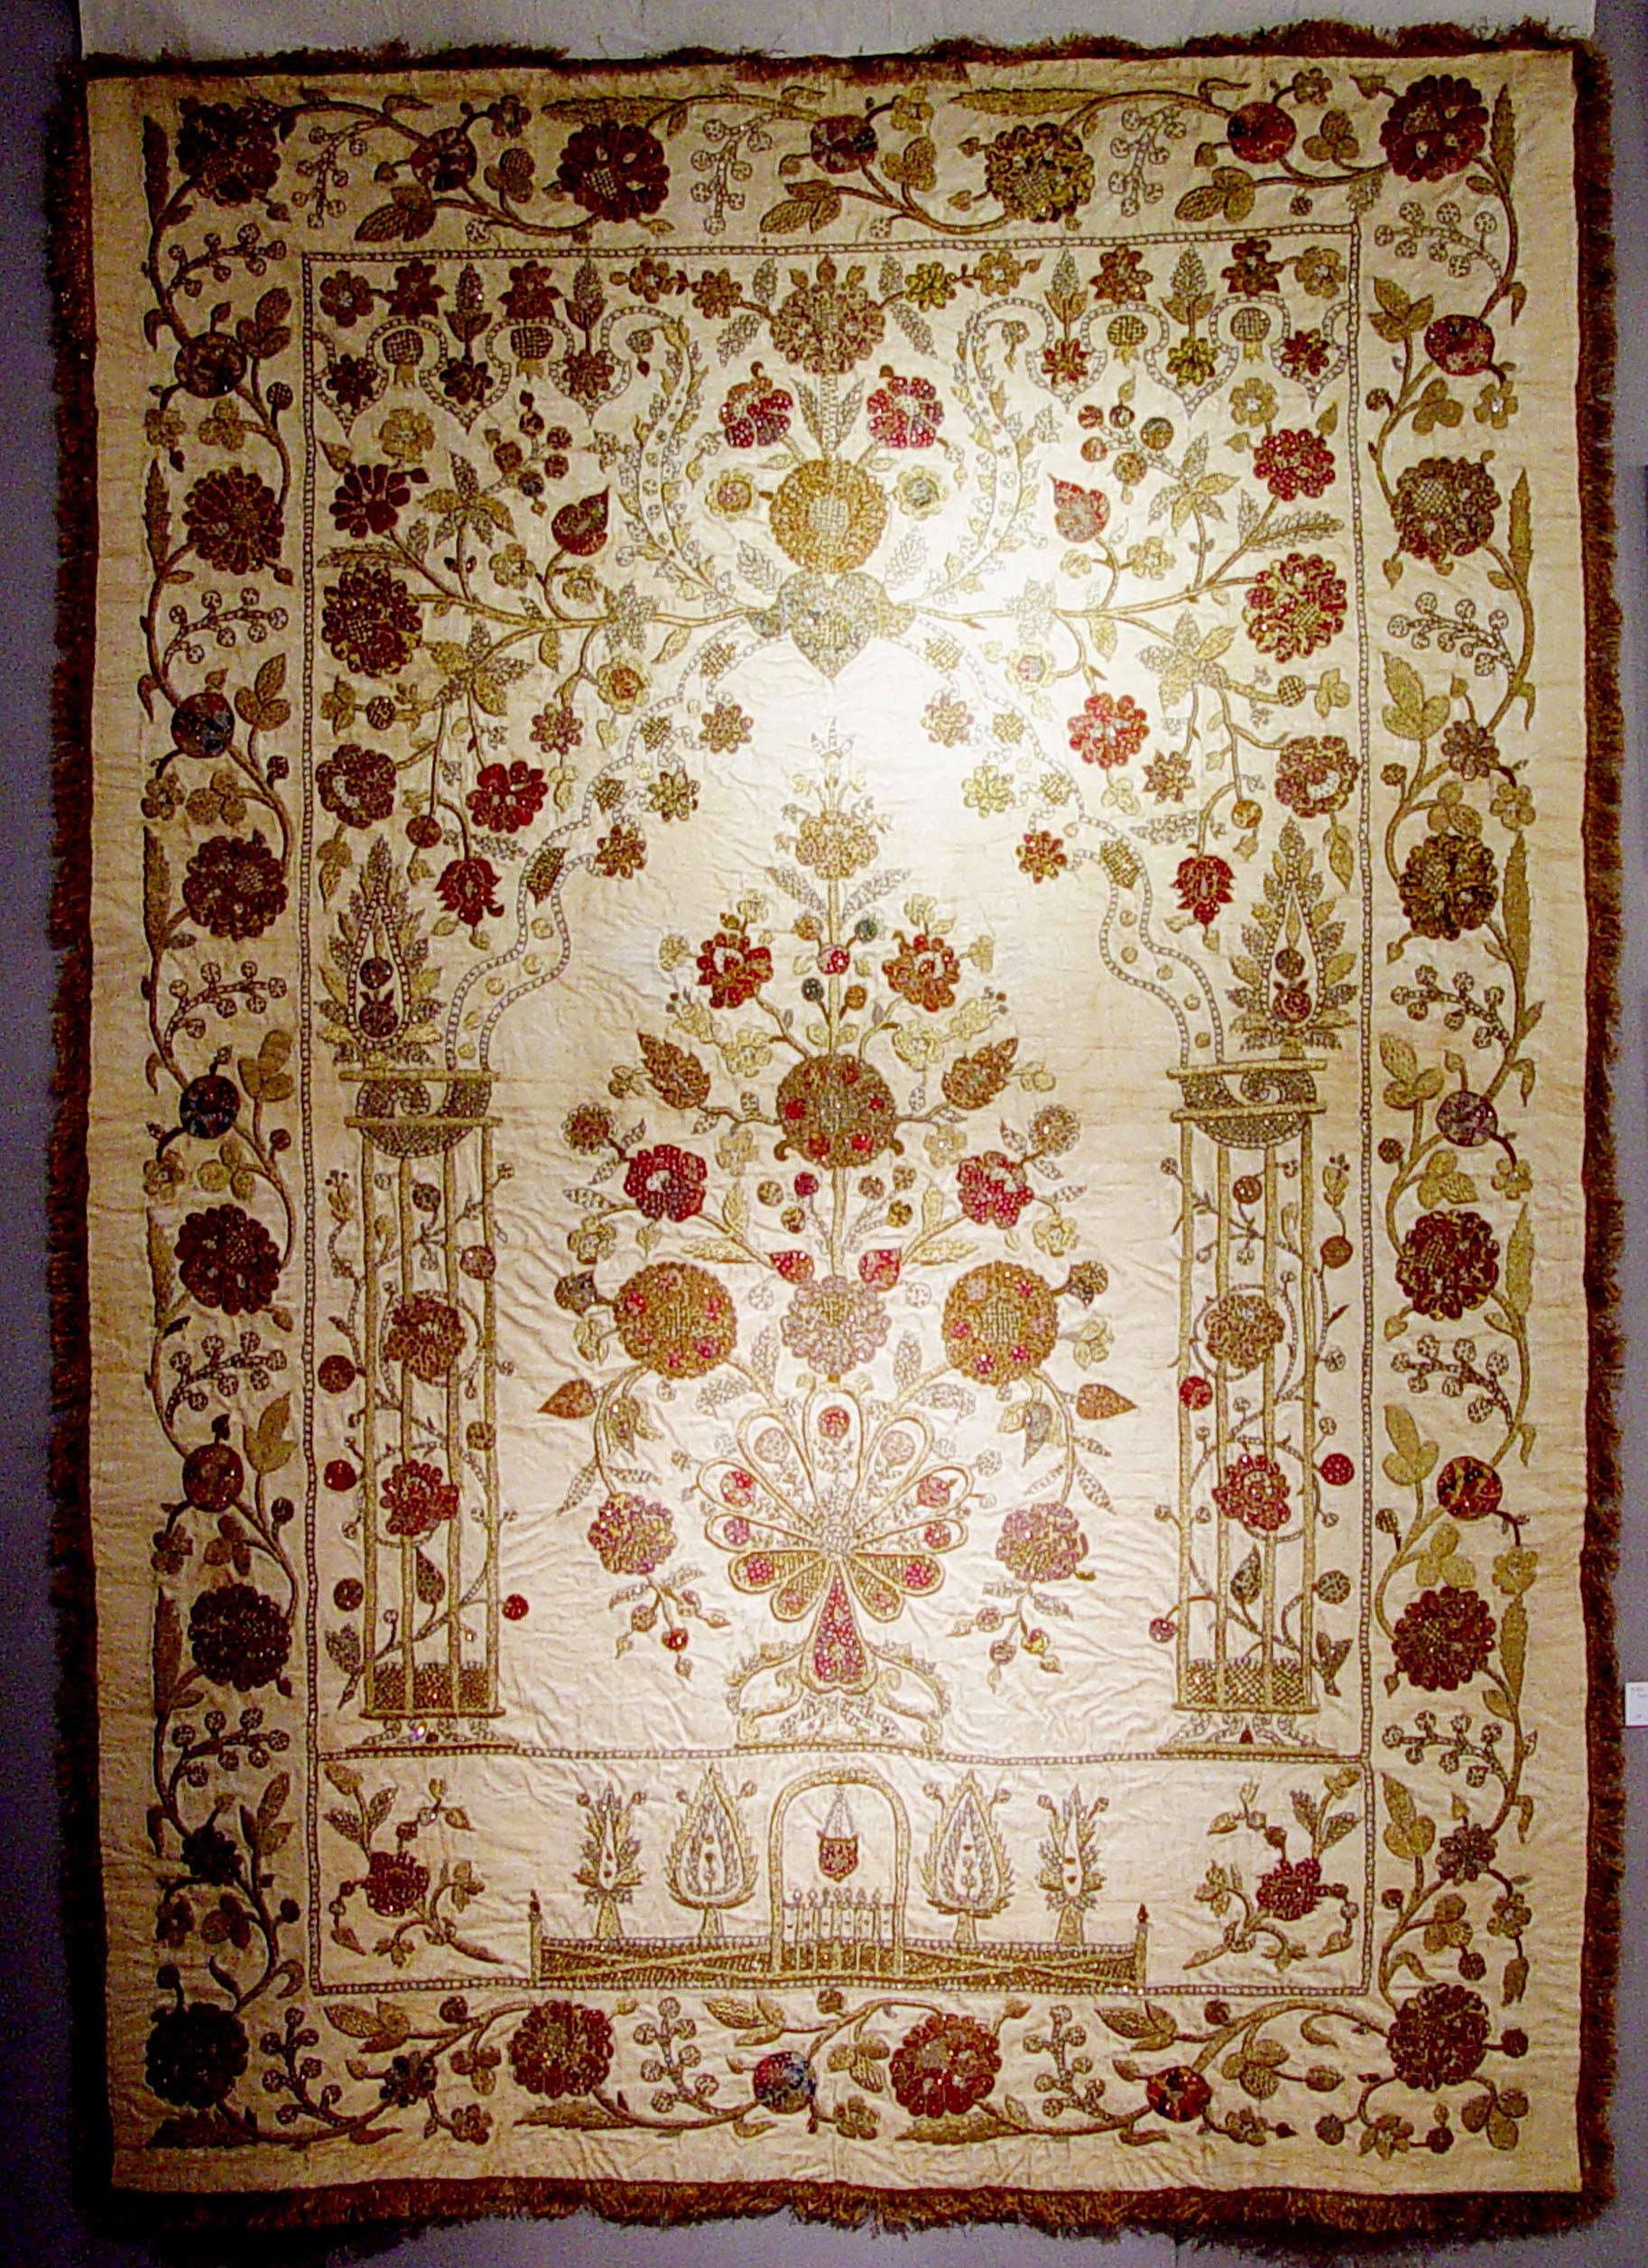 Das osmanische Textil hat eine Goldstickerei auf beigem Seidensatin, auf dem Blumen abgebildet sind.

Die massive Seidenarbeit stellt die im Koran beschriebene gartenähnliche Umgebung des Himmels dar. Es zeigt ein gewölbtes Tor, das Tor zum